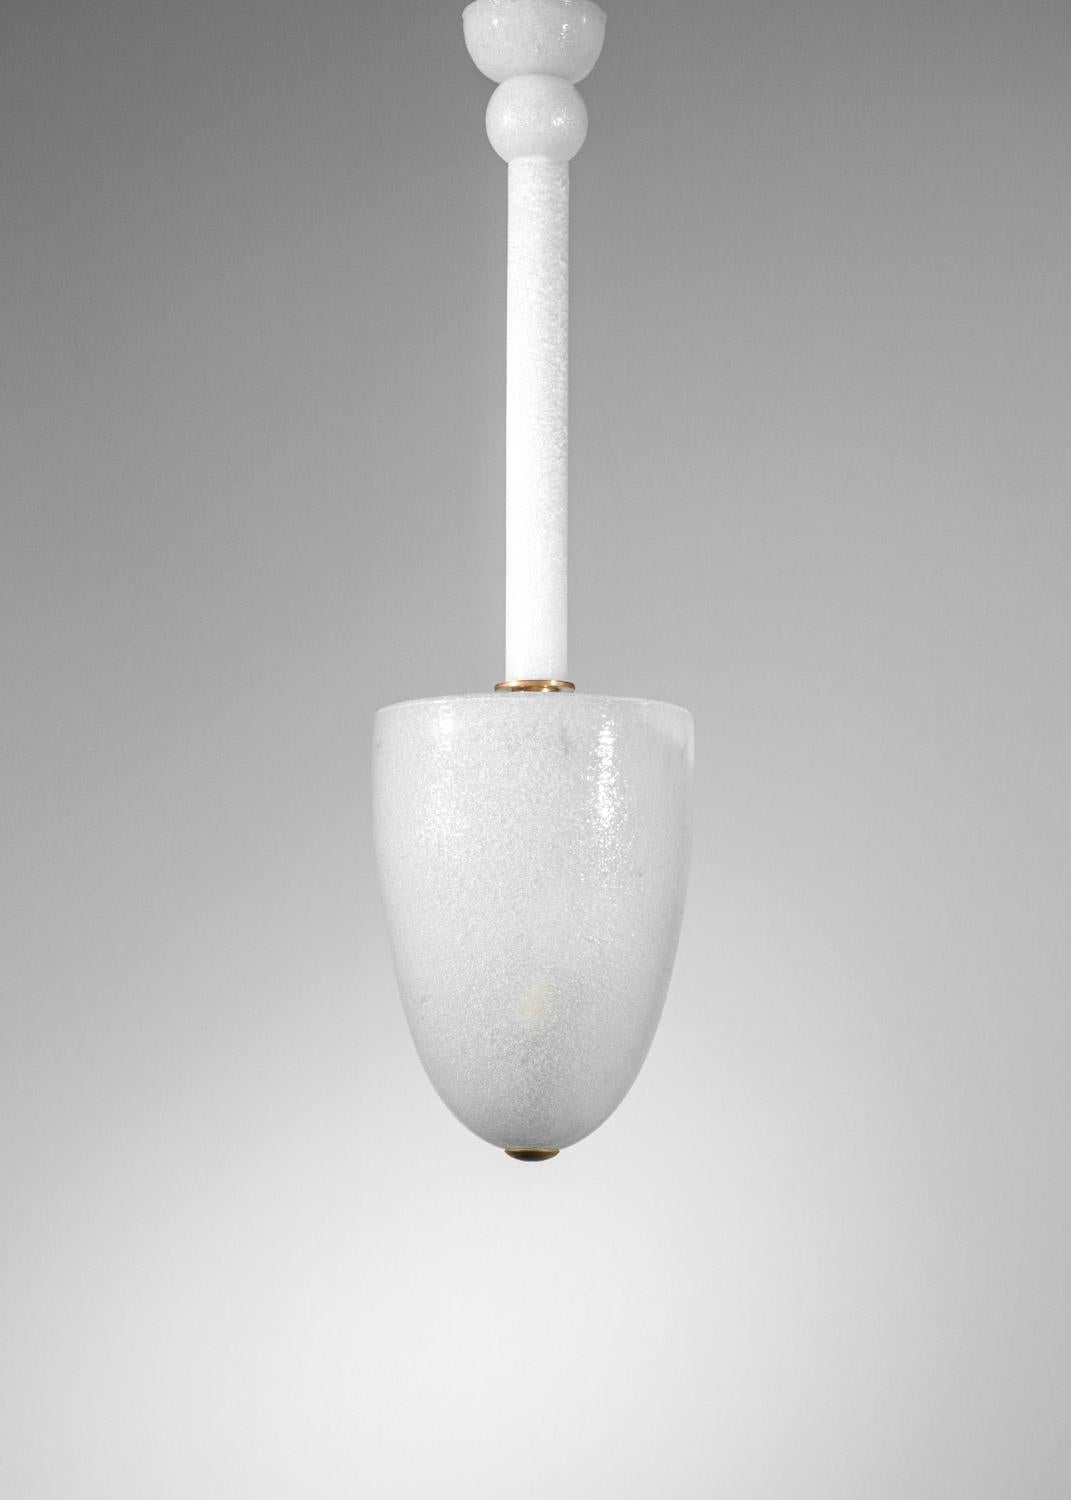 Suspension chandelier attributed to tomaso buzzi venini murano 3